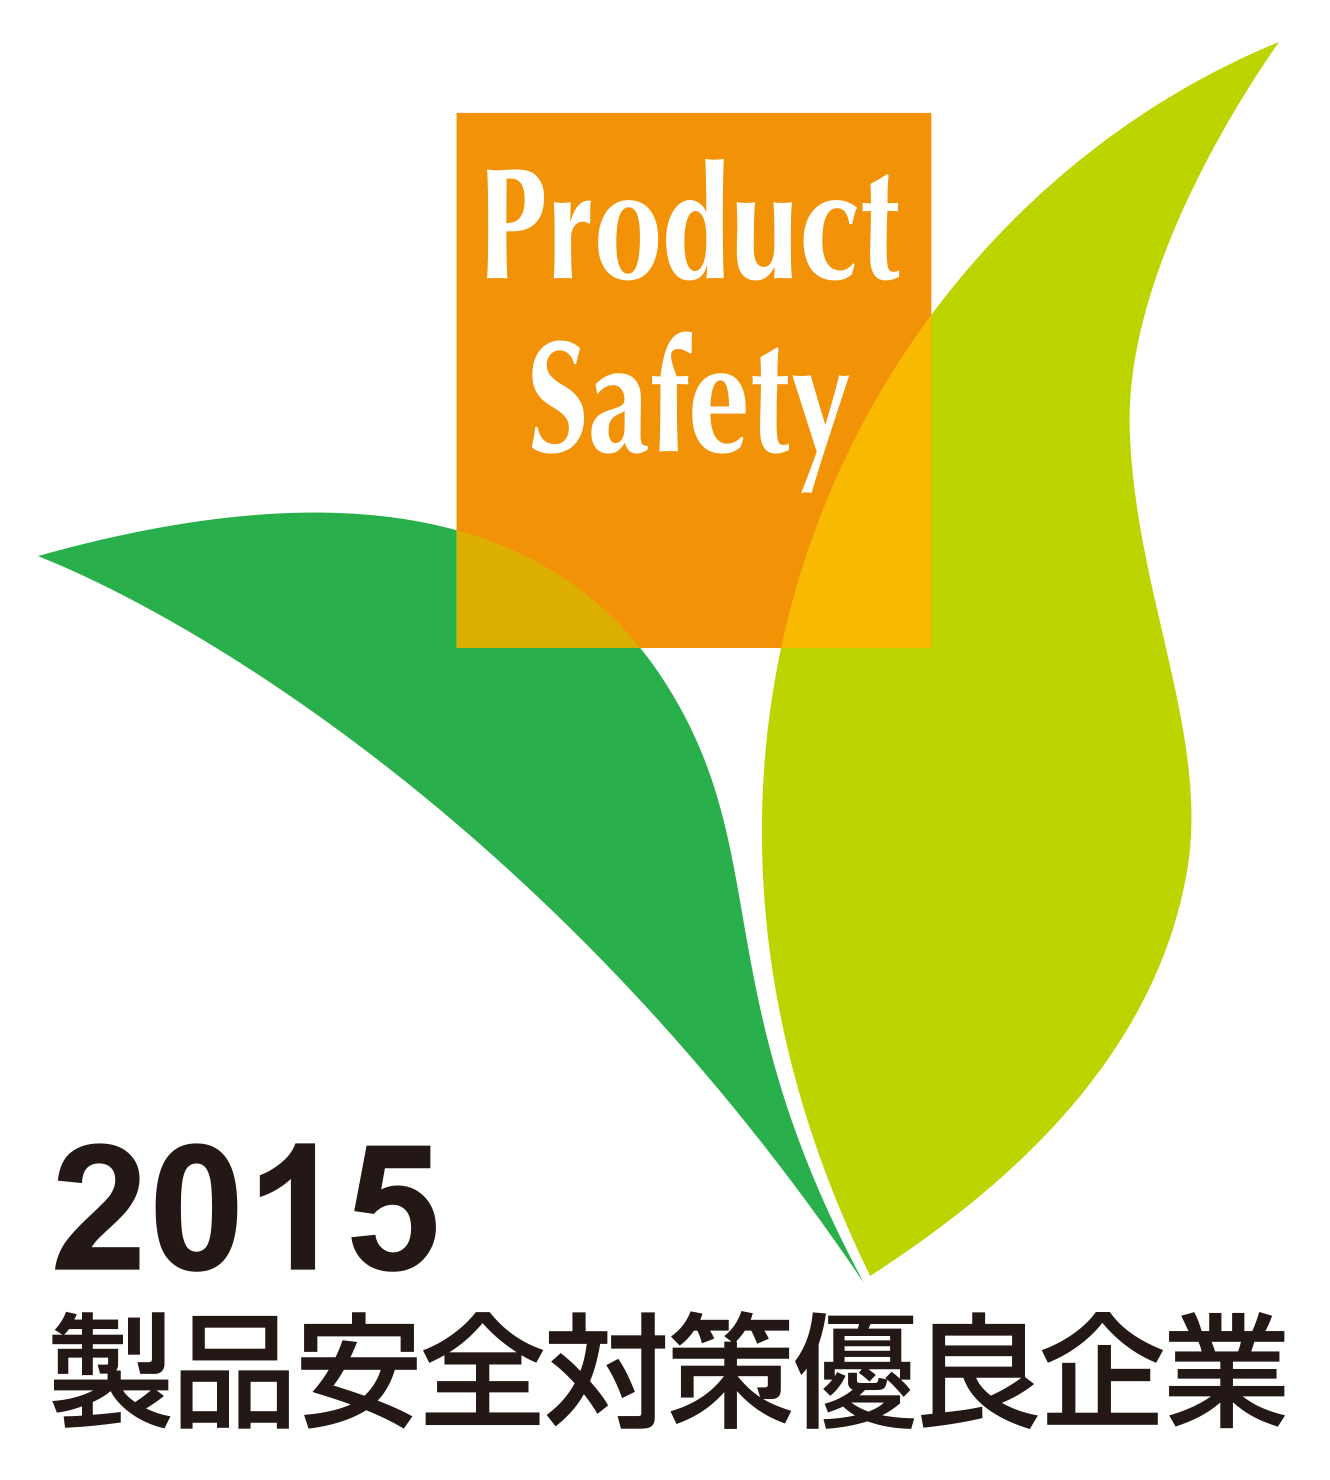 2015年度 第9回 製品安全対策優良企業表彰 ロゴマーク